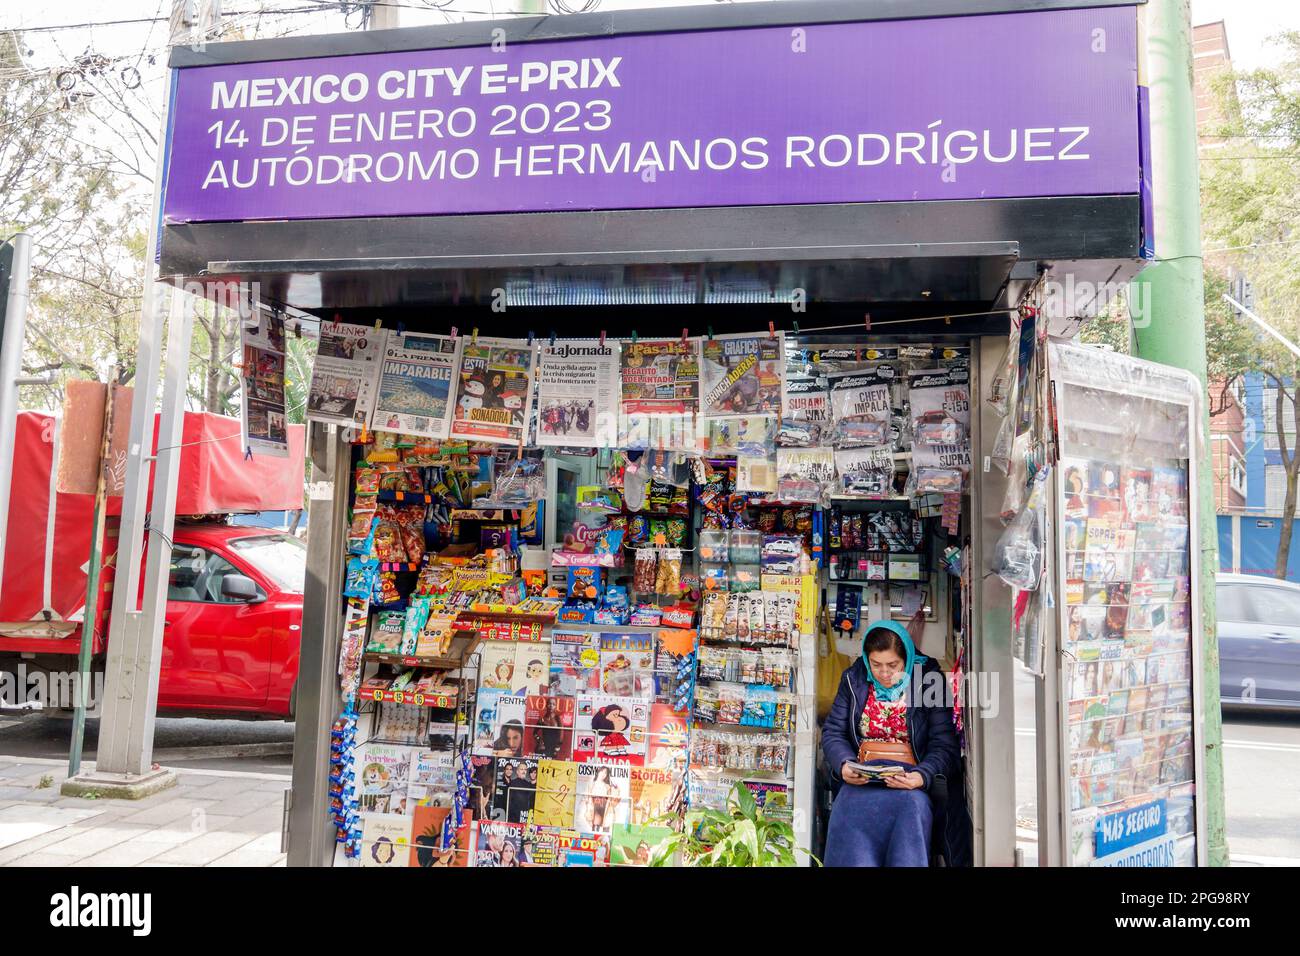 Città del Messico, marciapiede venditore di strada, edicola, riviste giornali, donna donna donna donna donna donna donna donna donna donna donna, adulti, residenti residenti, vendita display, spazio al dettaglio, sh Foto Stock